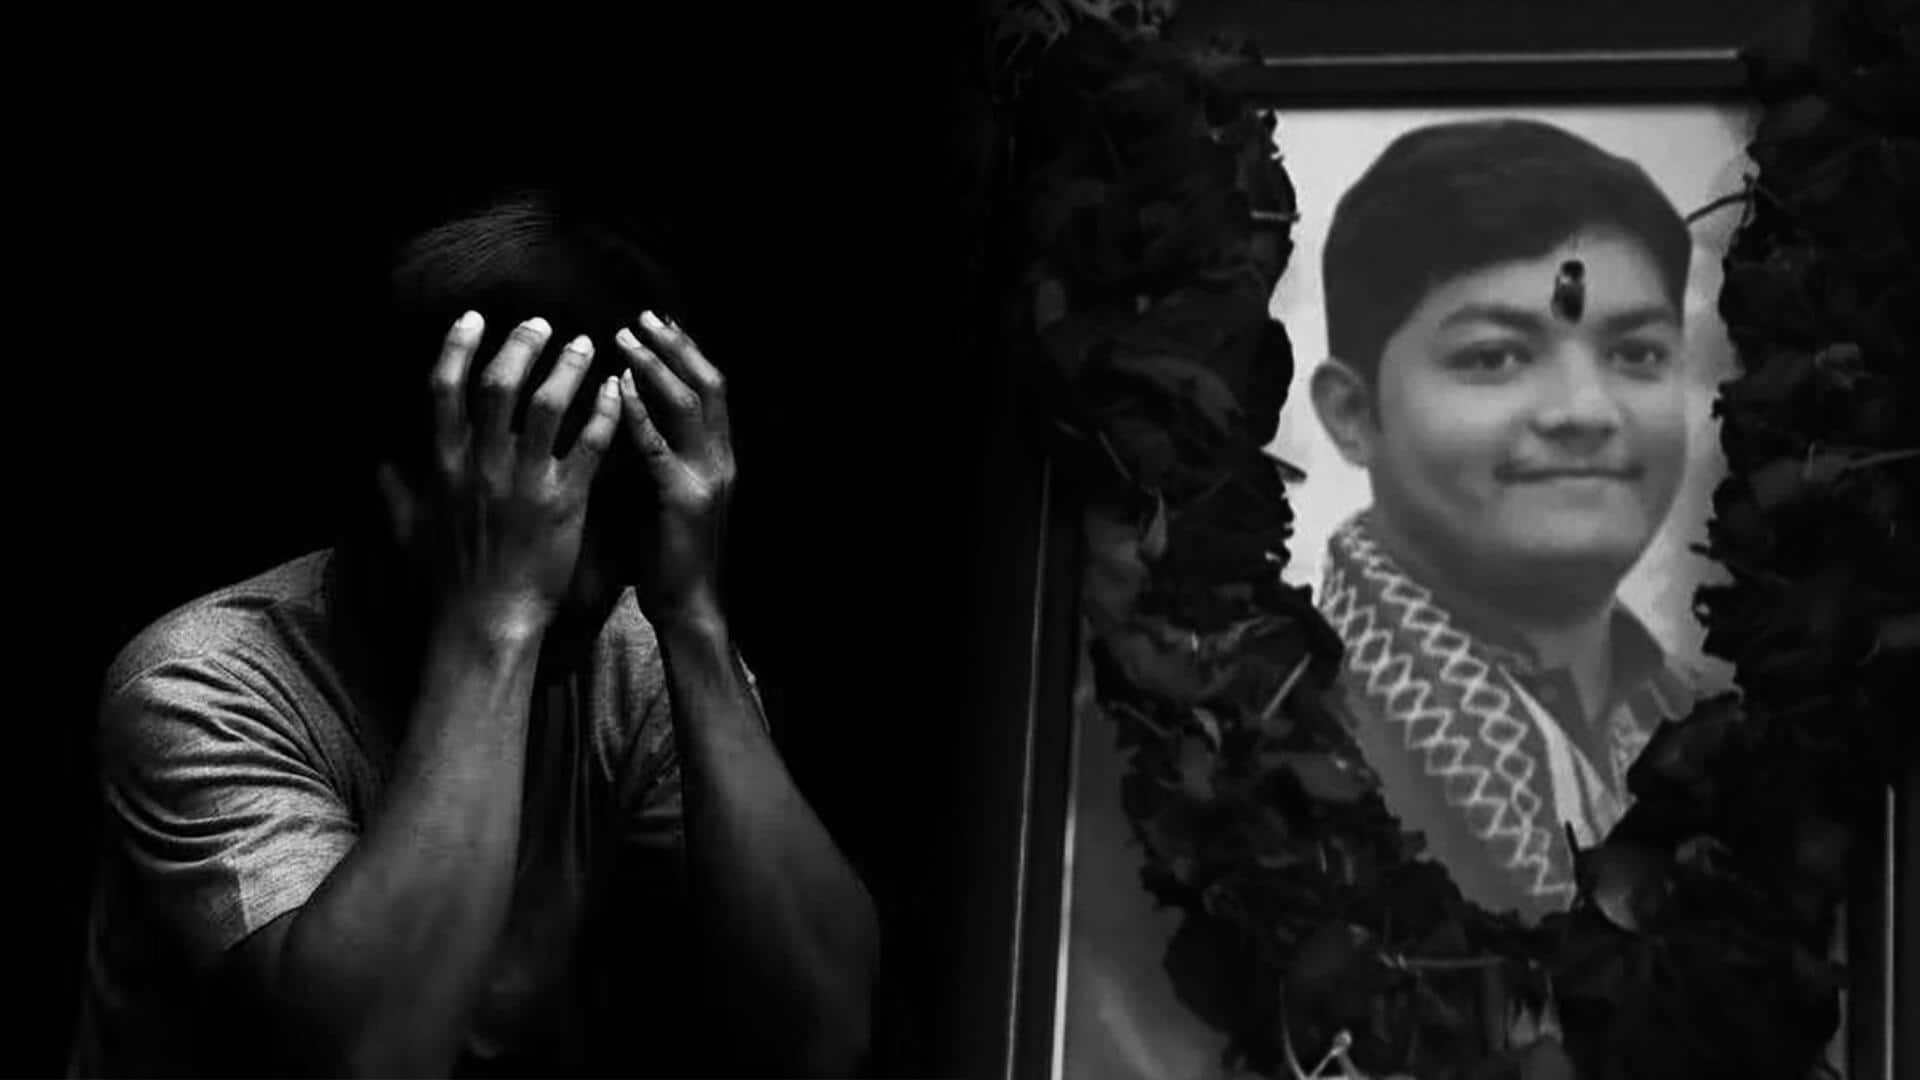 IIT बॉम्बे में दलित छात्र की आत्महत्या का मामला, परिजन बोले- जातीय भेदभाव के आरोप सही